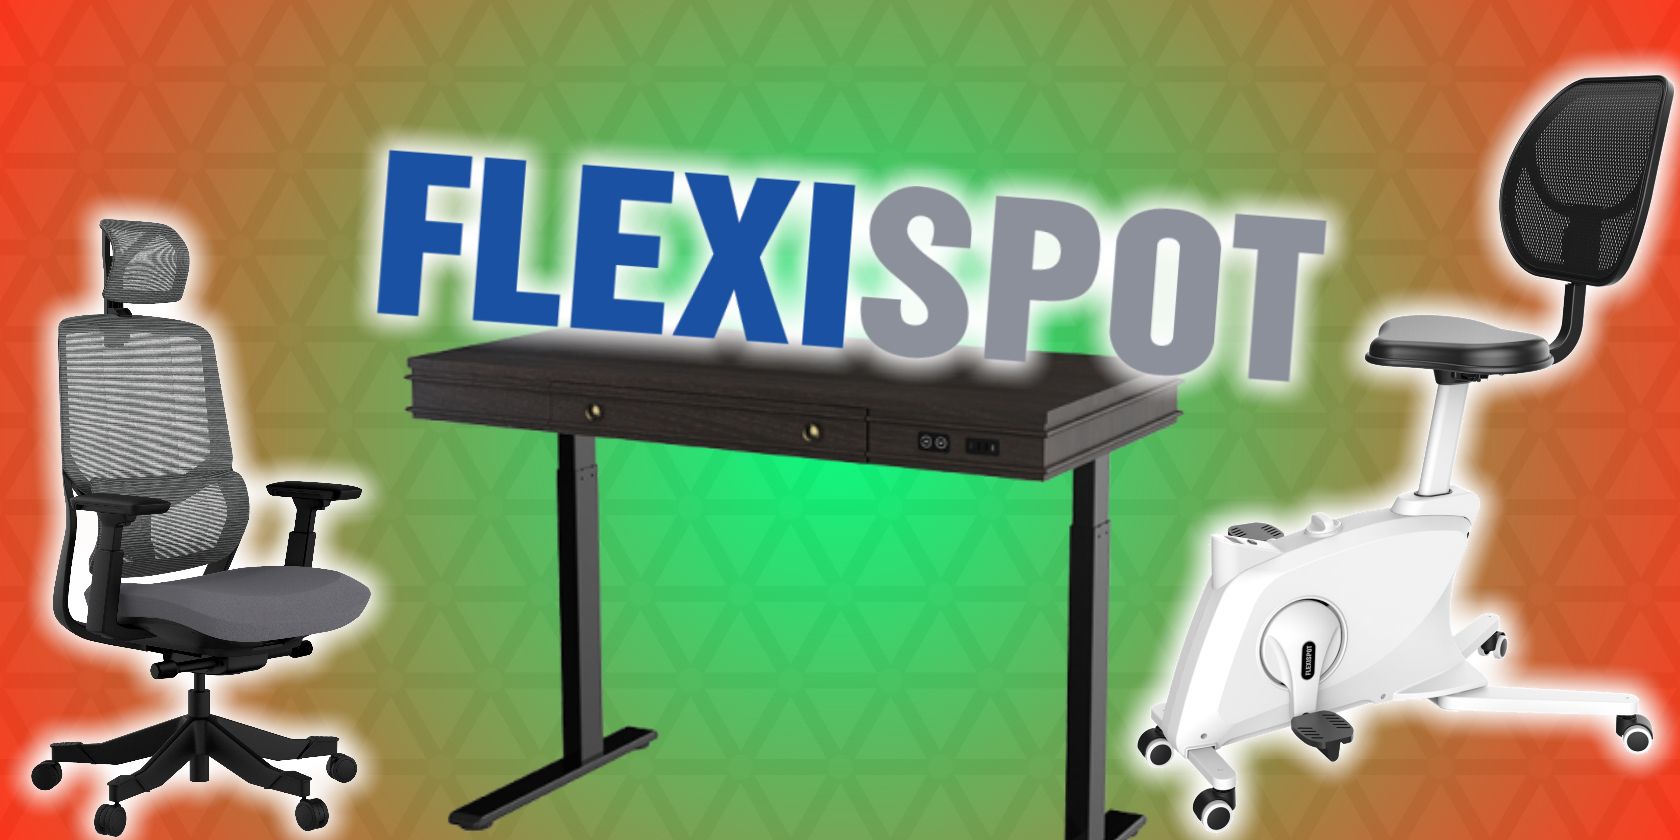 flexispot day deals logo feature